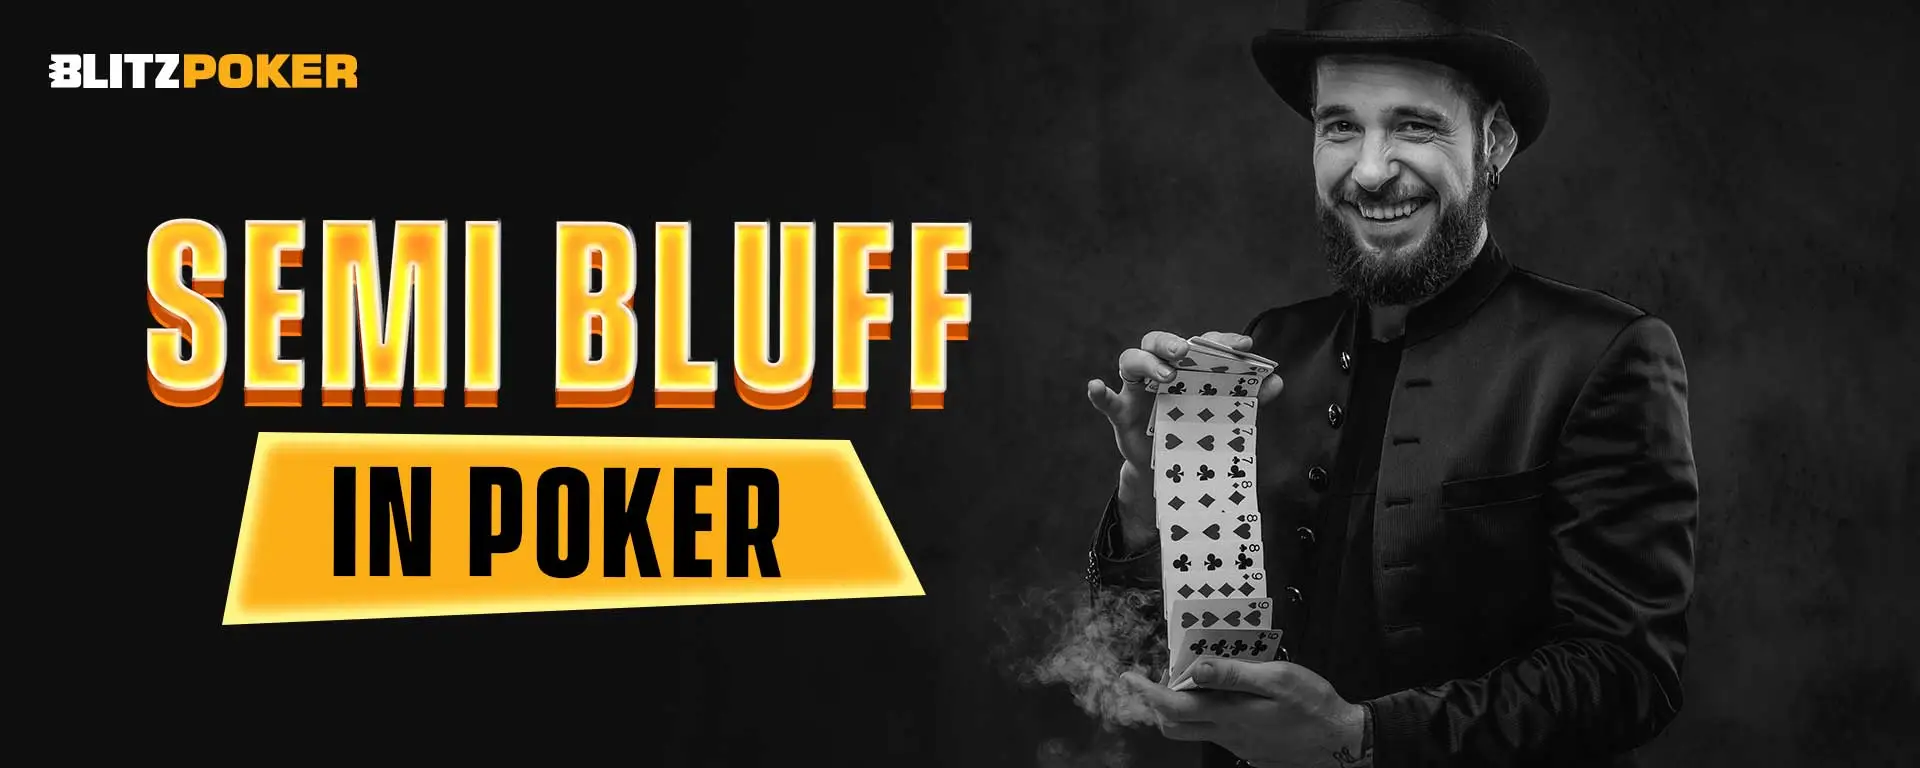 Semi Bluff in Poker